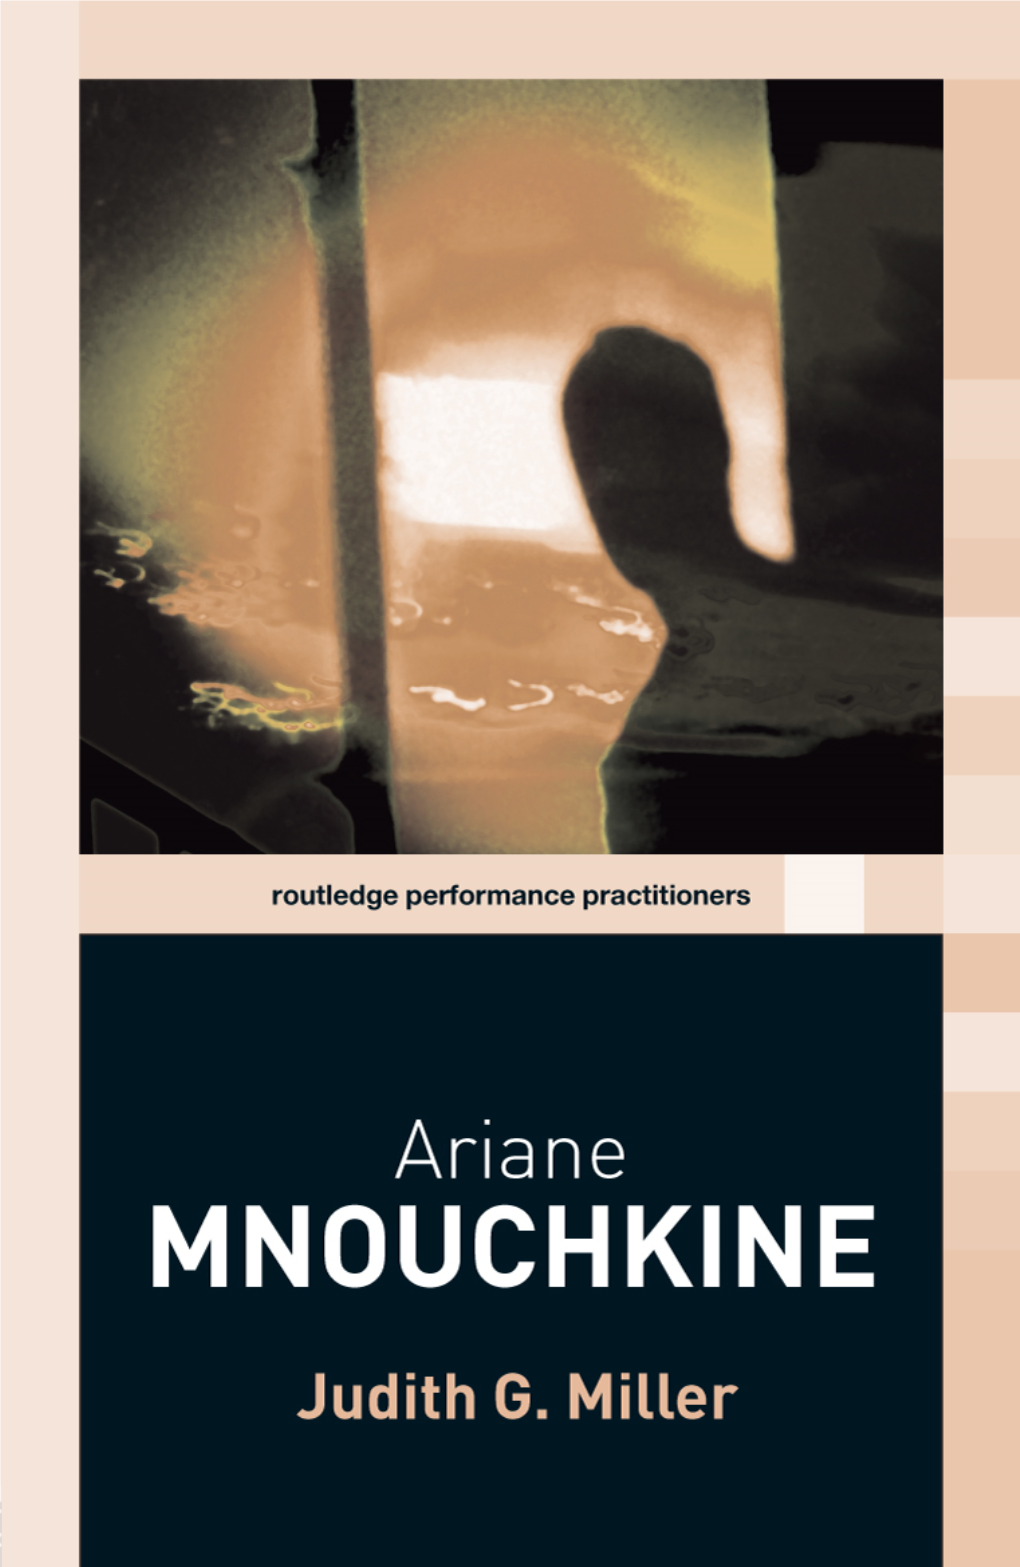 Ariane Mnouchkine New York, July 22, 2005